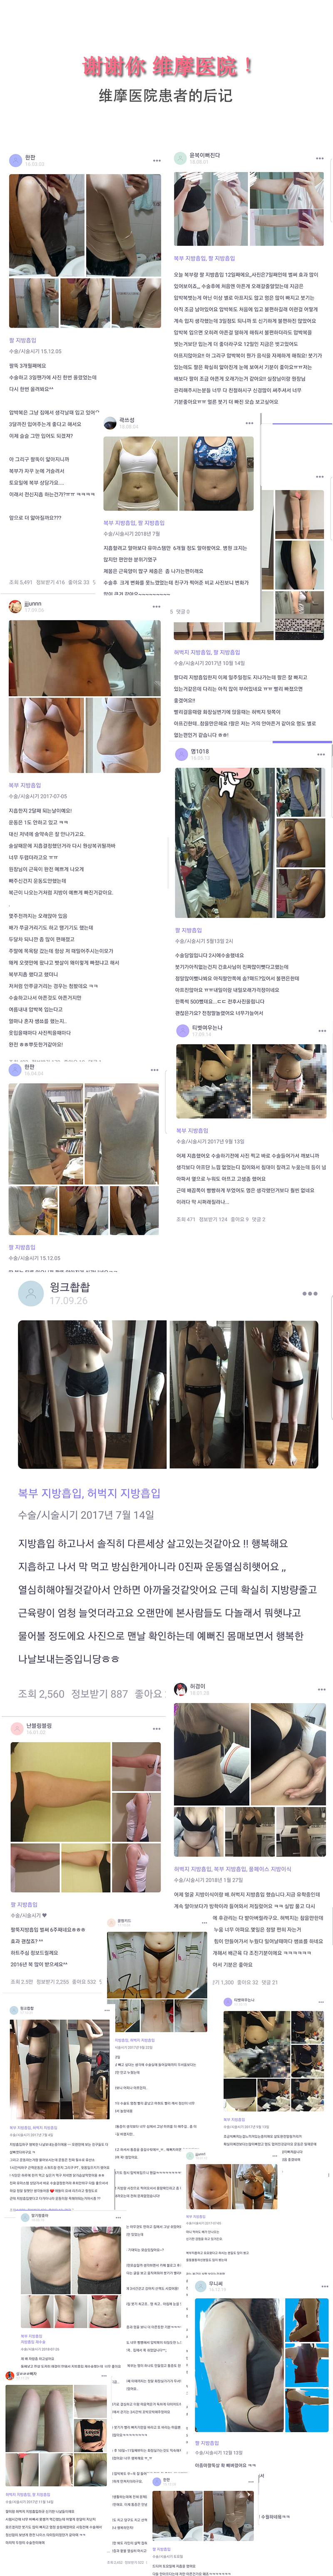 韩国维摩医院患者后记和前后对比照片，手臂吸脂前后照片，腹部吸脂前后对比照片，患者后记